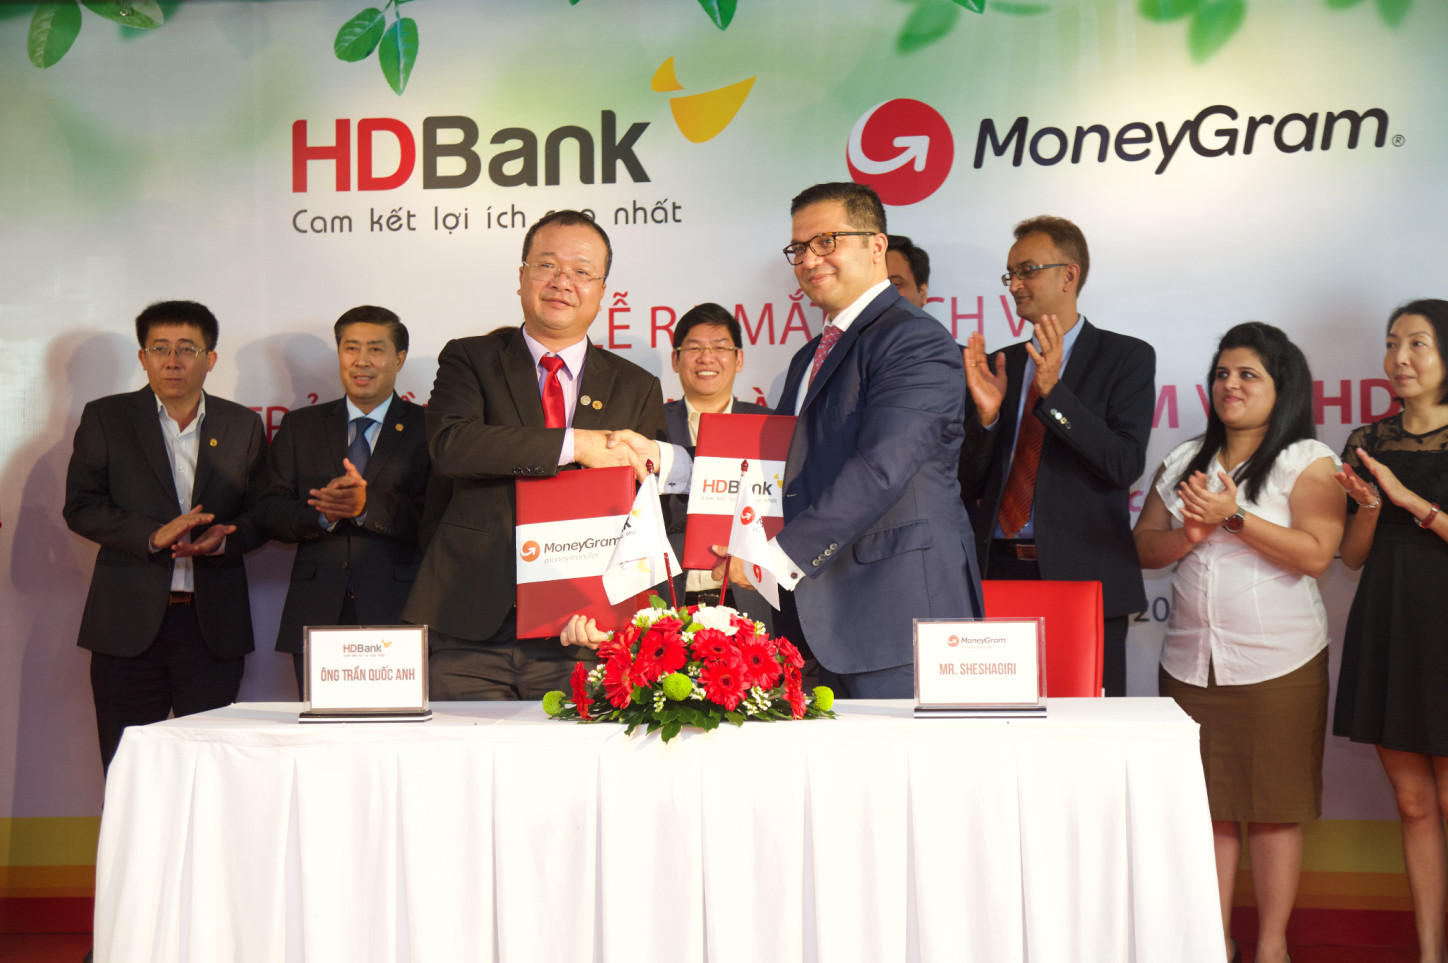 HDBank và MoneyGram hợp tác triển khai dịch vụ chi trả kiều hối tại nhà